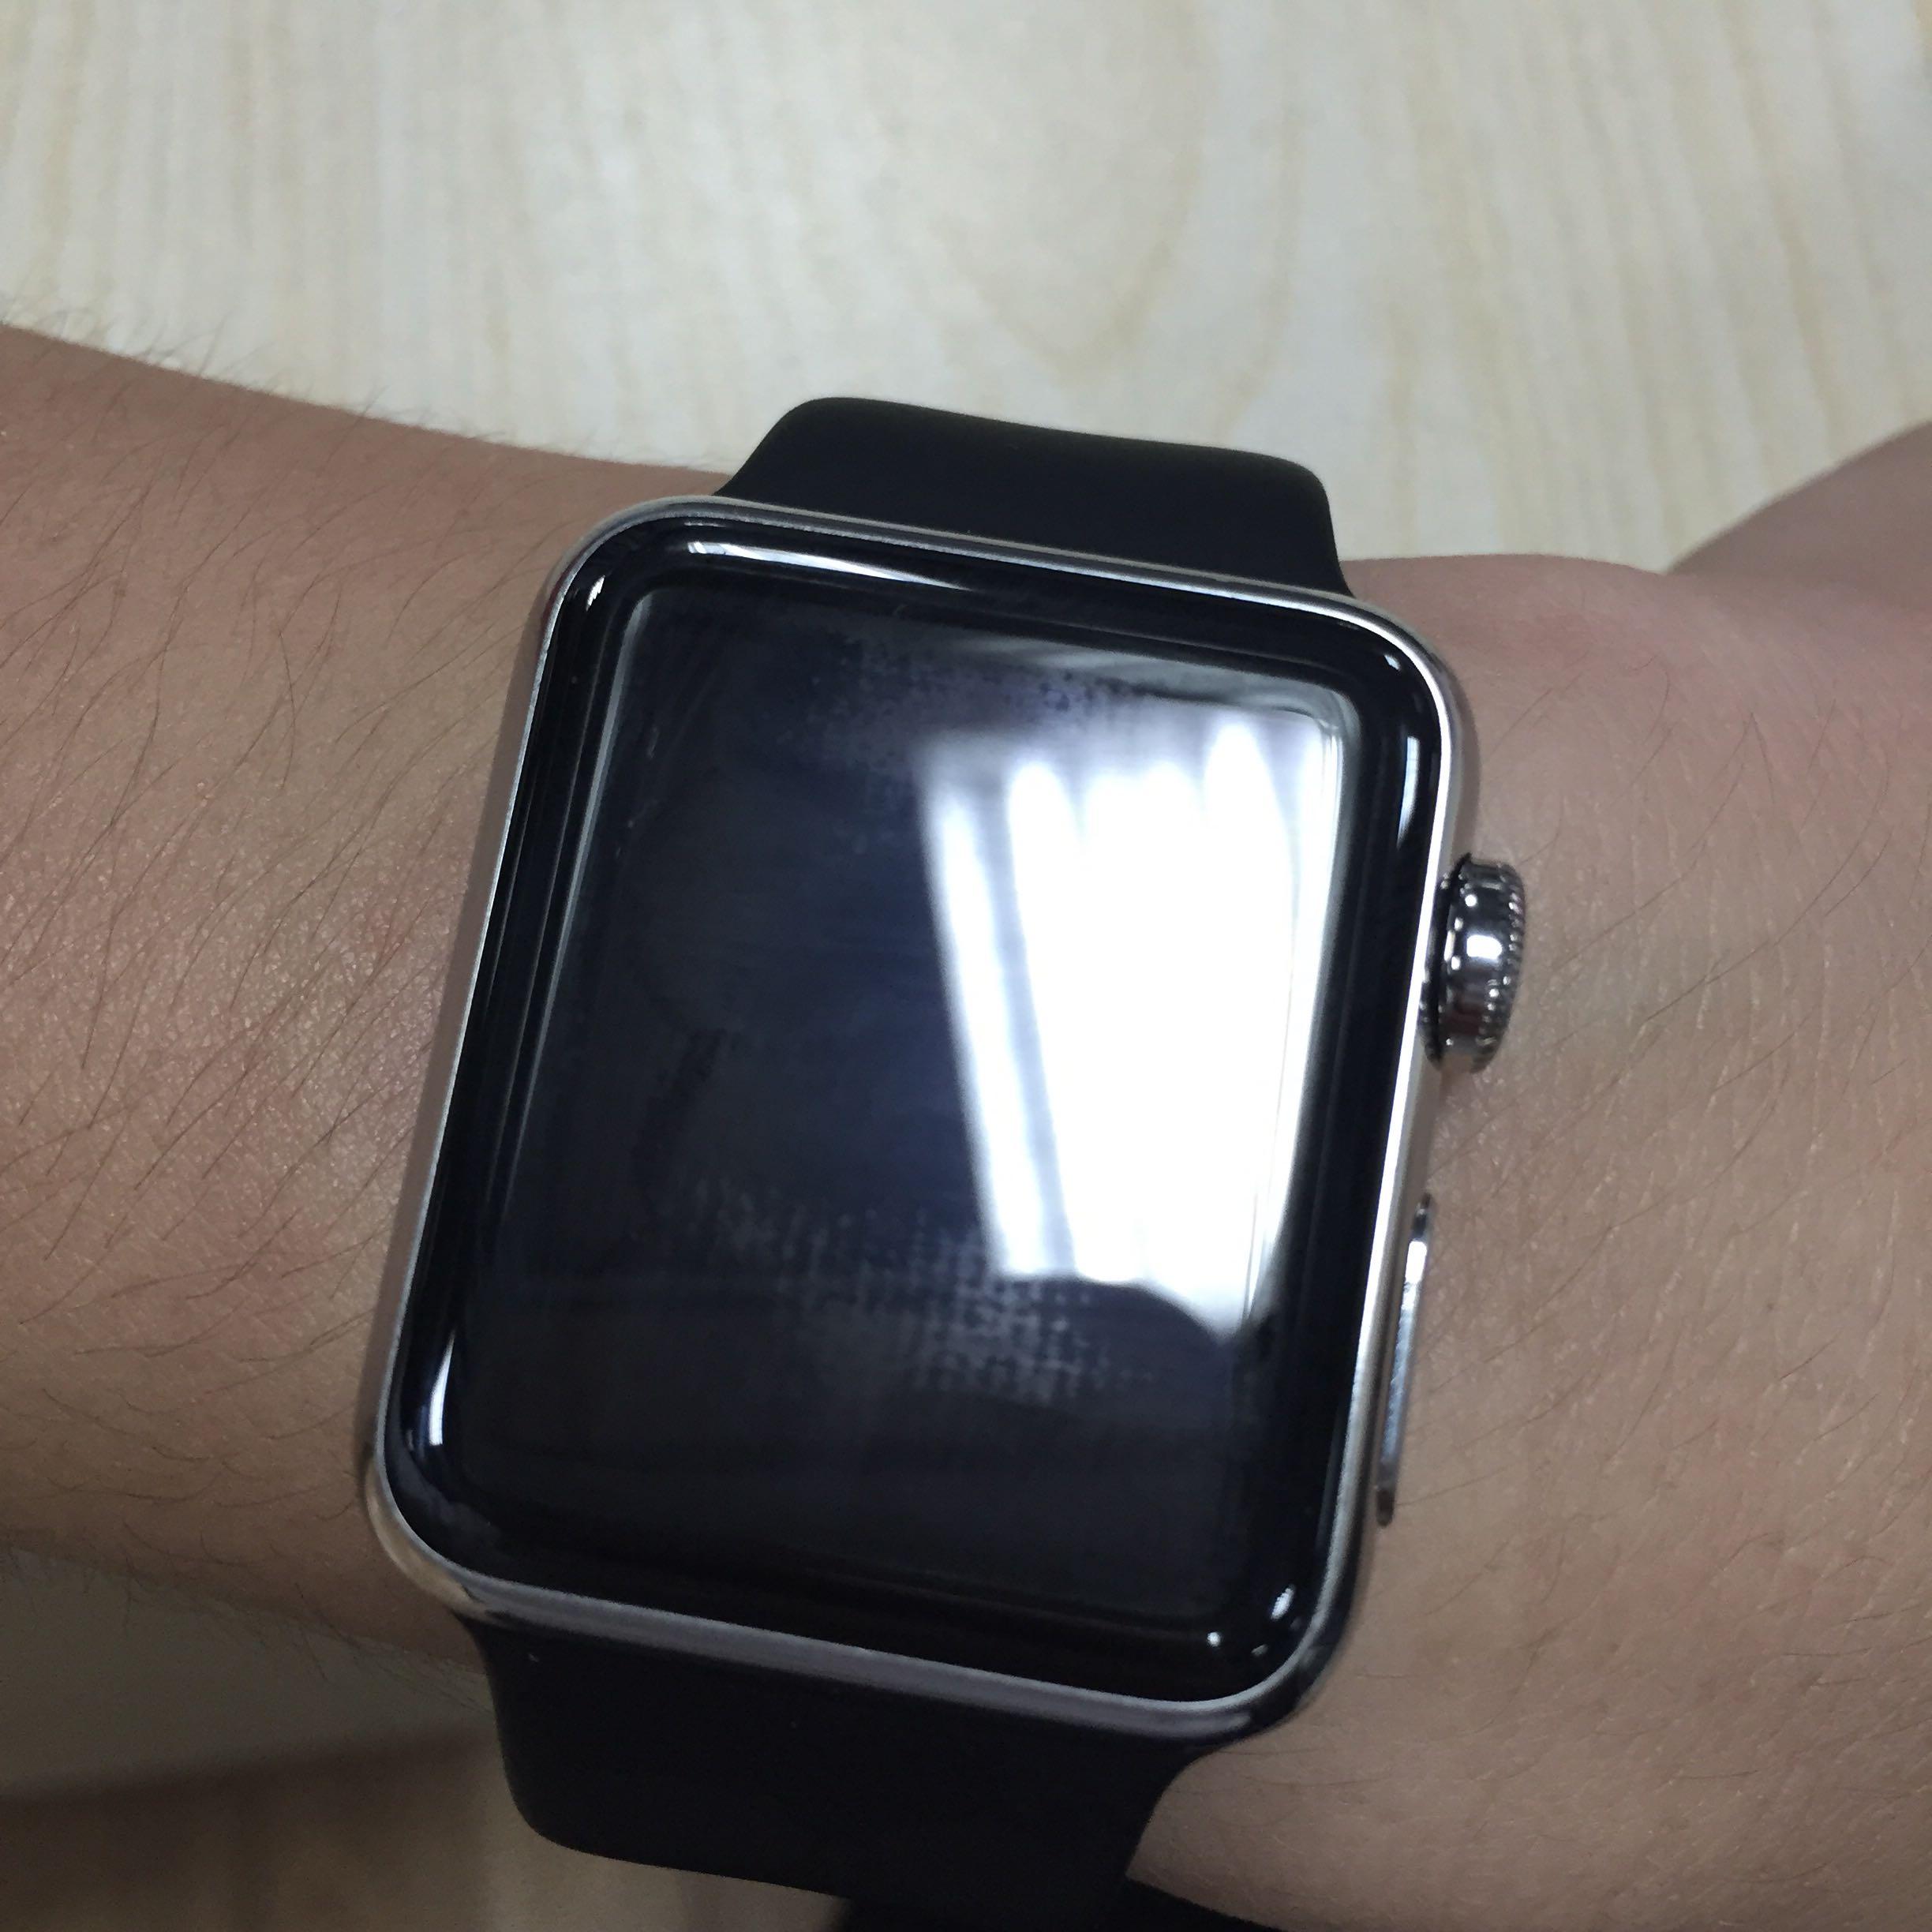 我在苹果授权店买了apple watch,2天后屏幕有问